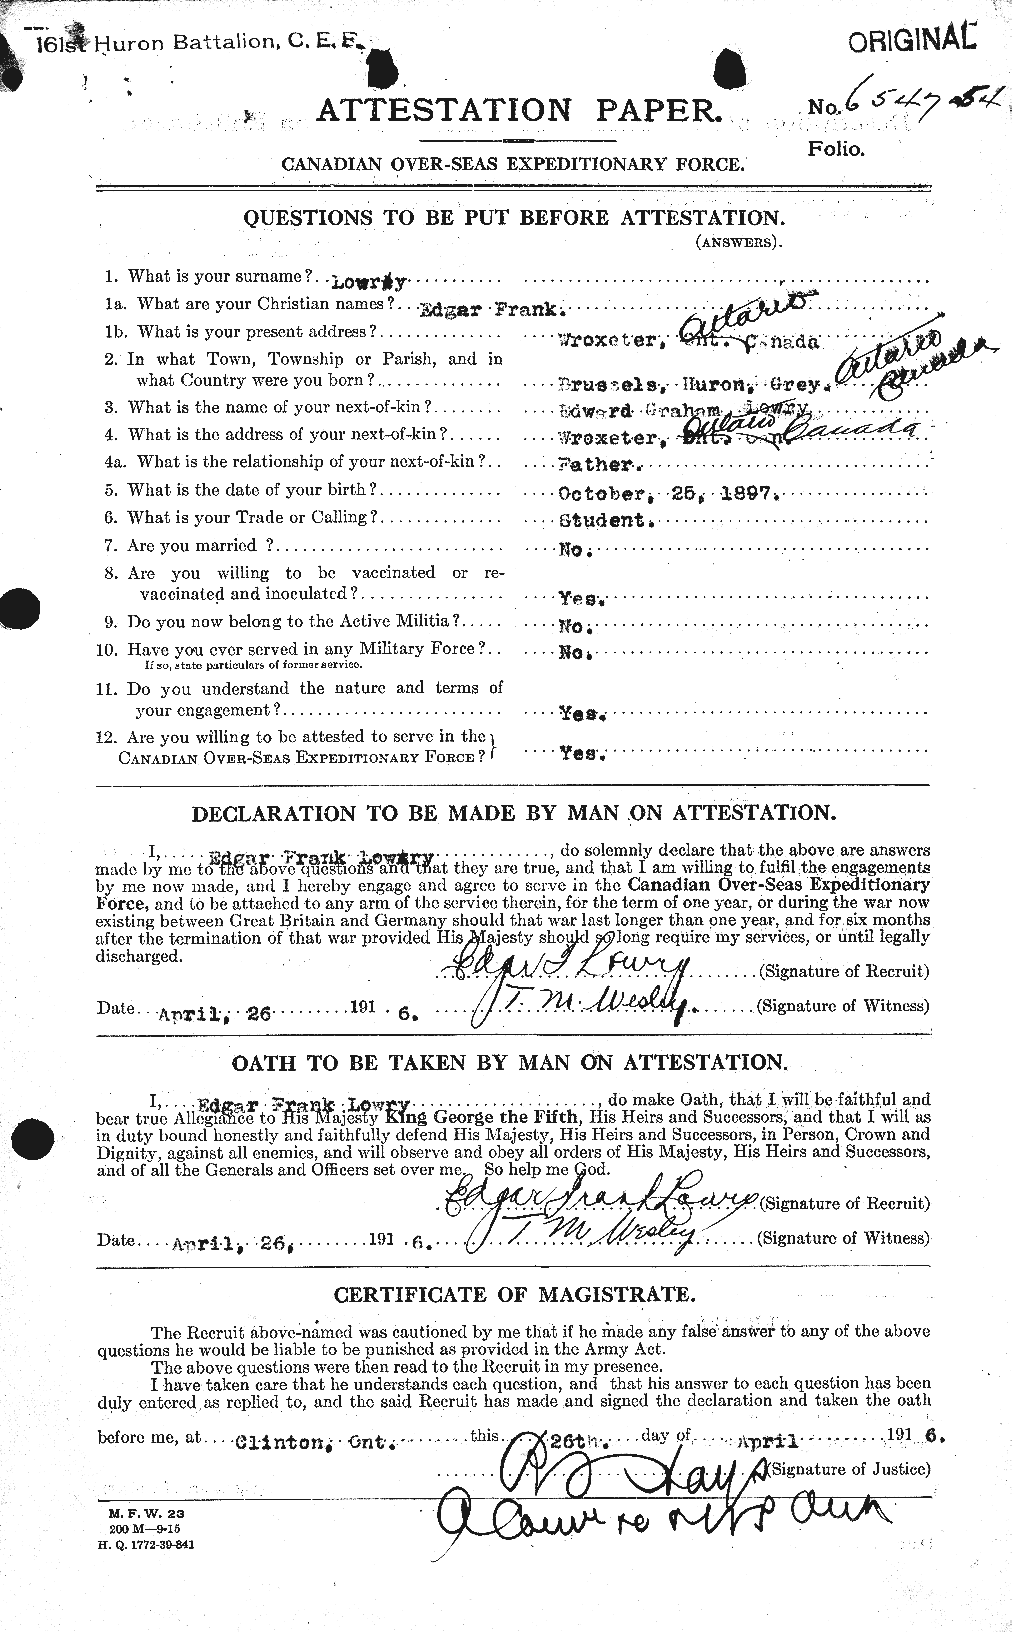 Dossiers du Personnel de la Première Guerre mondiale - CEC 473974a